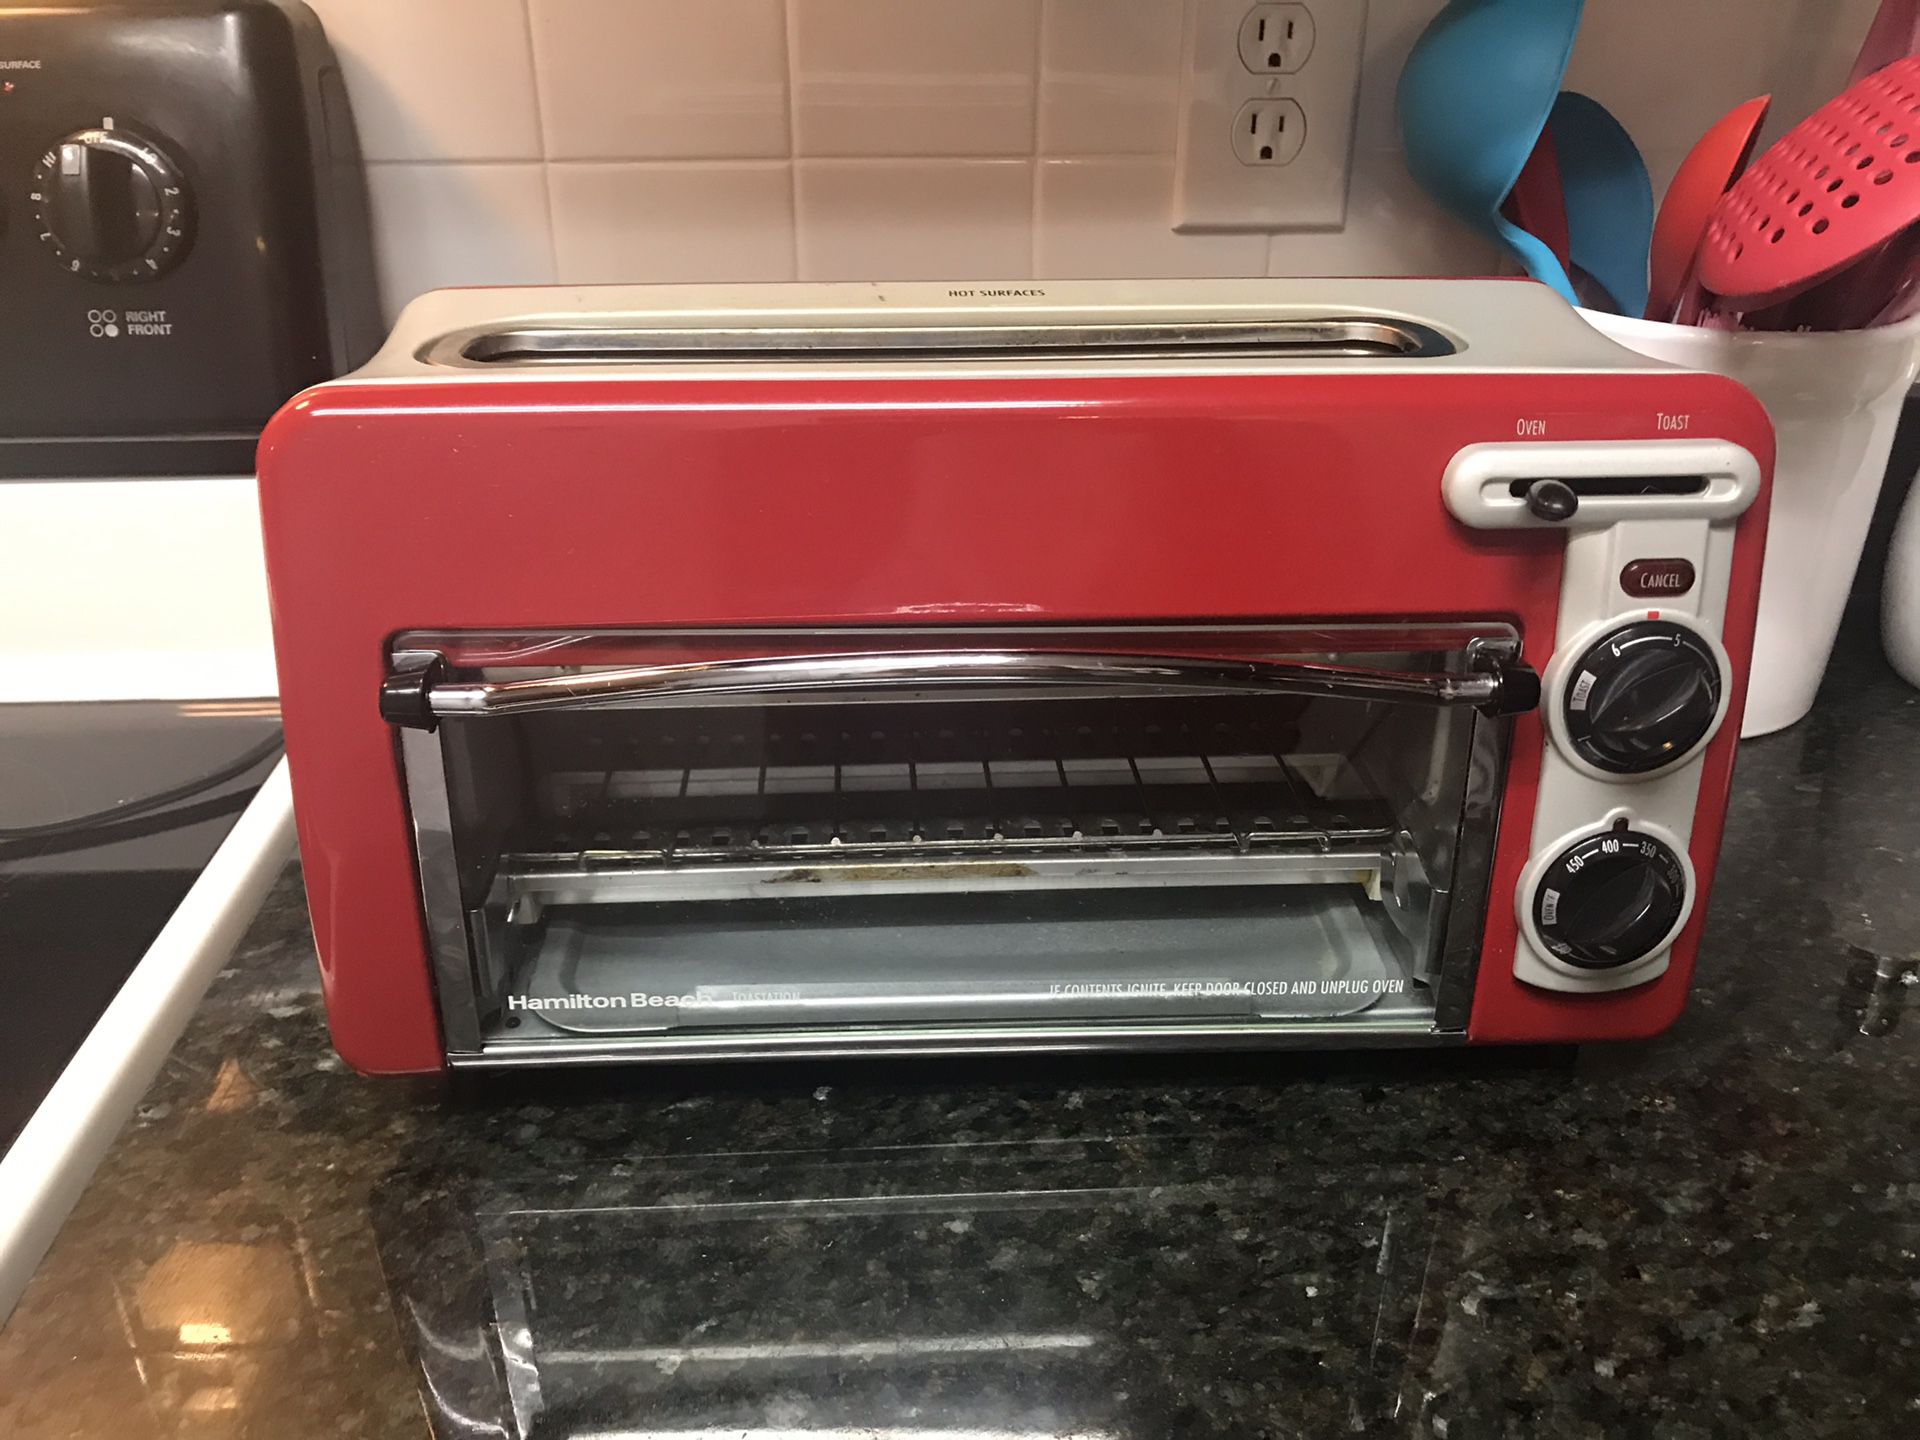 Toastation Toaster Oven